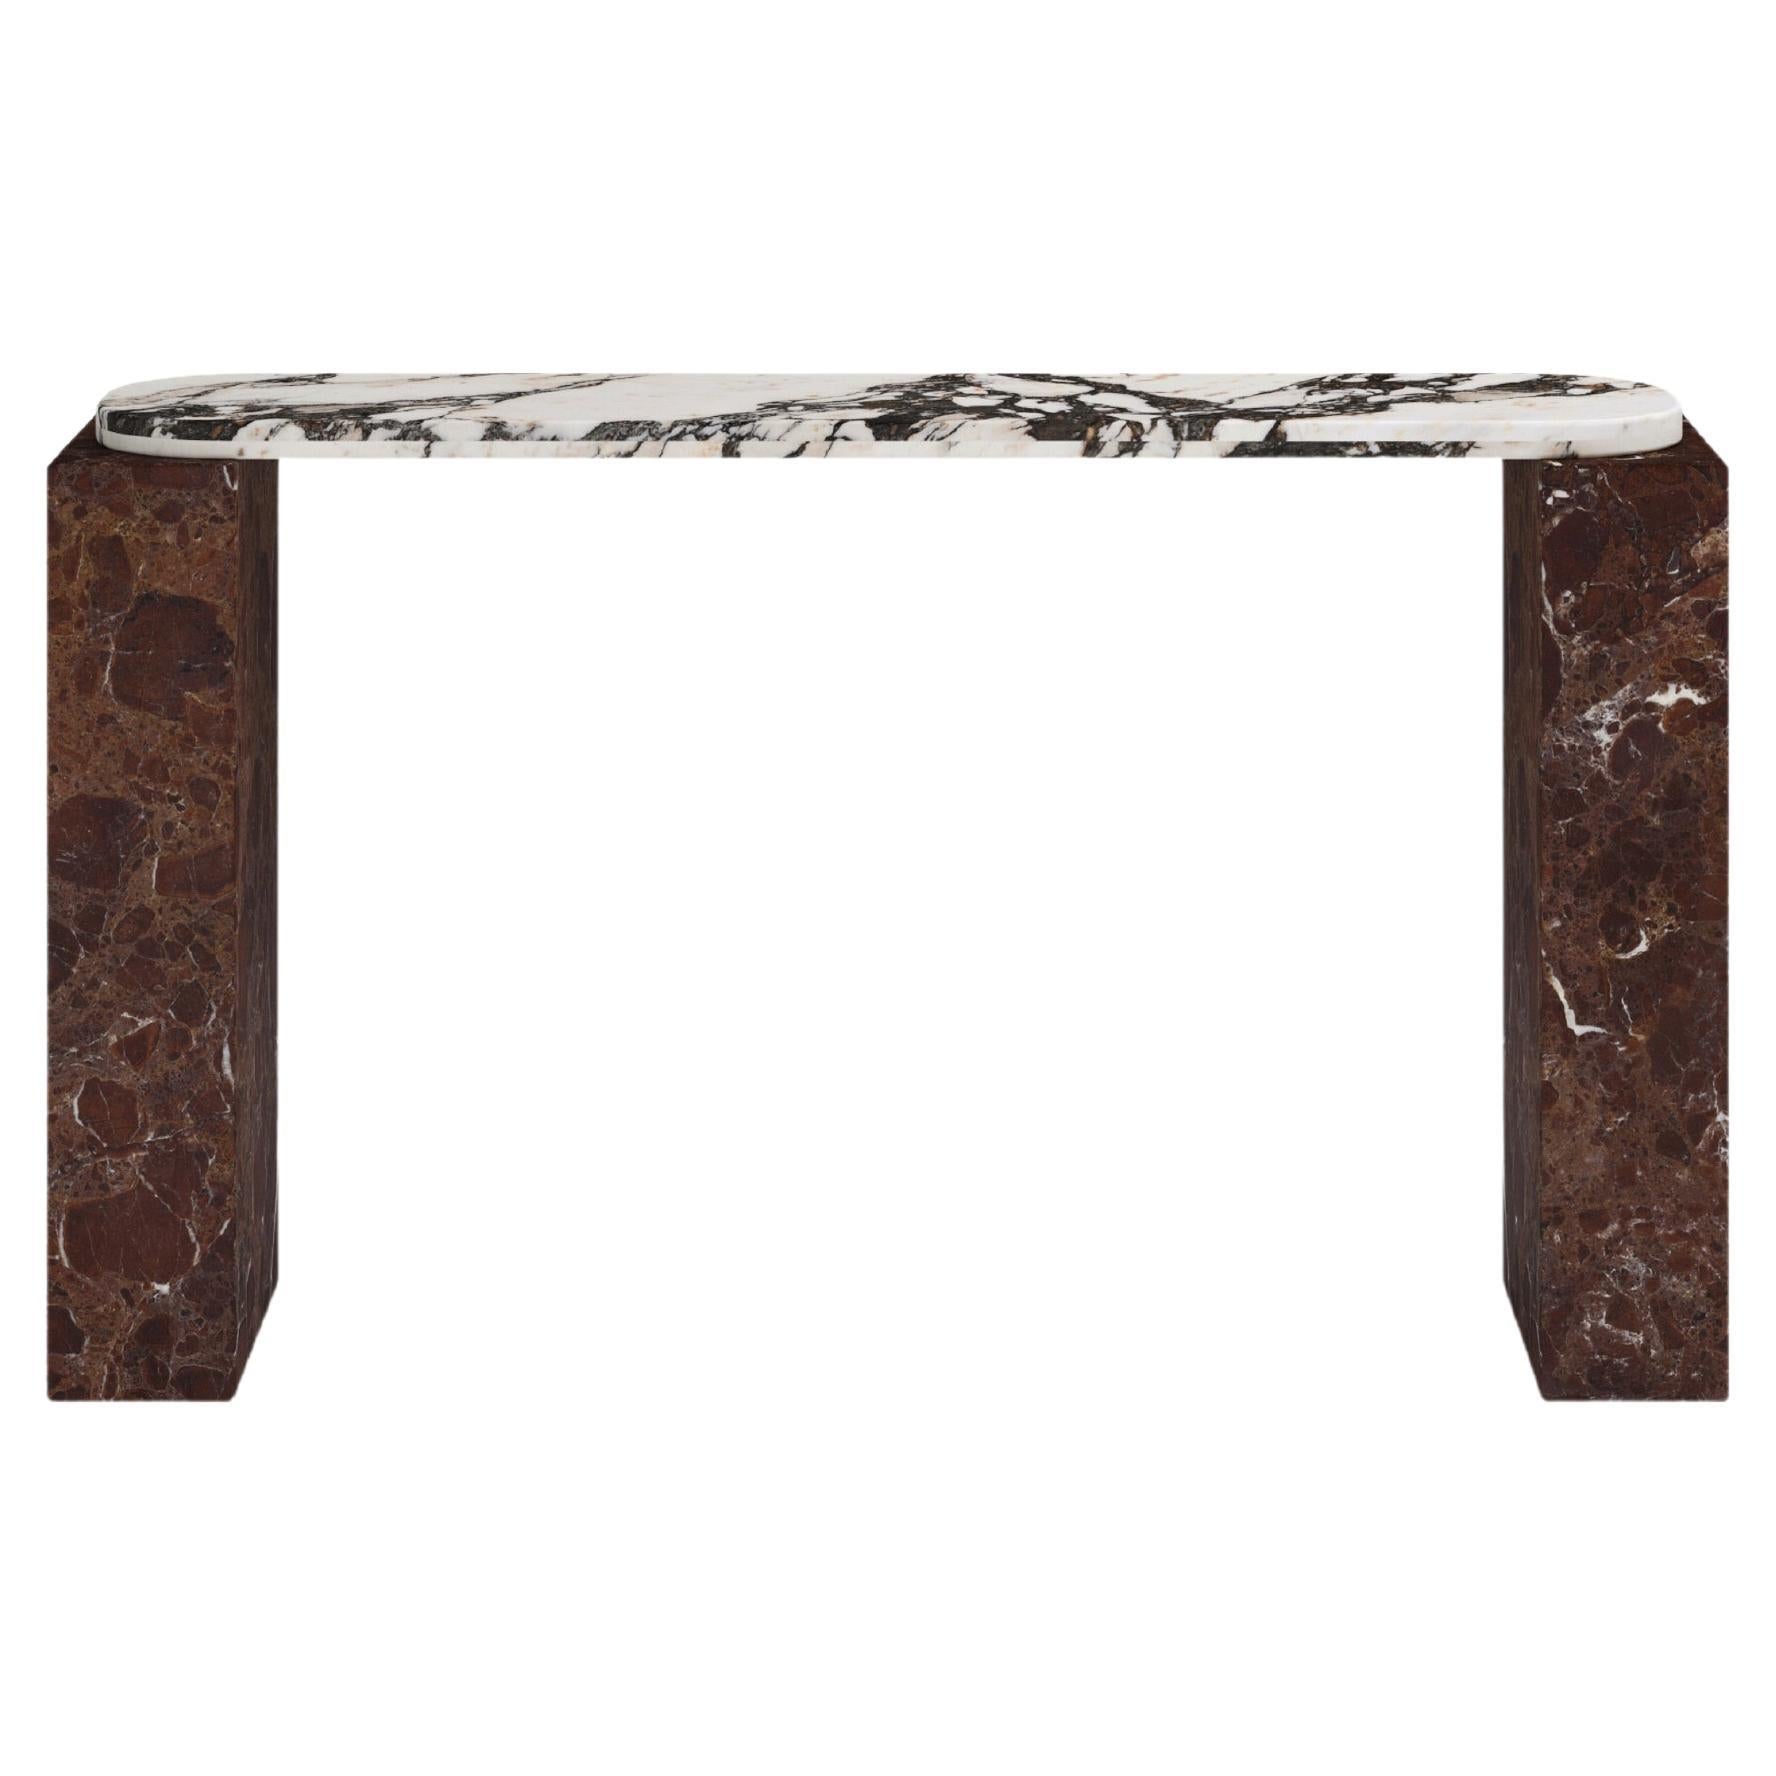 FORM(LA) Cubo Console Table 74”L x 17”W x 36”H Calacatta Viola & Rosso Marble For Sale